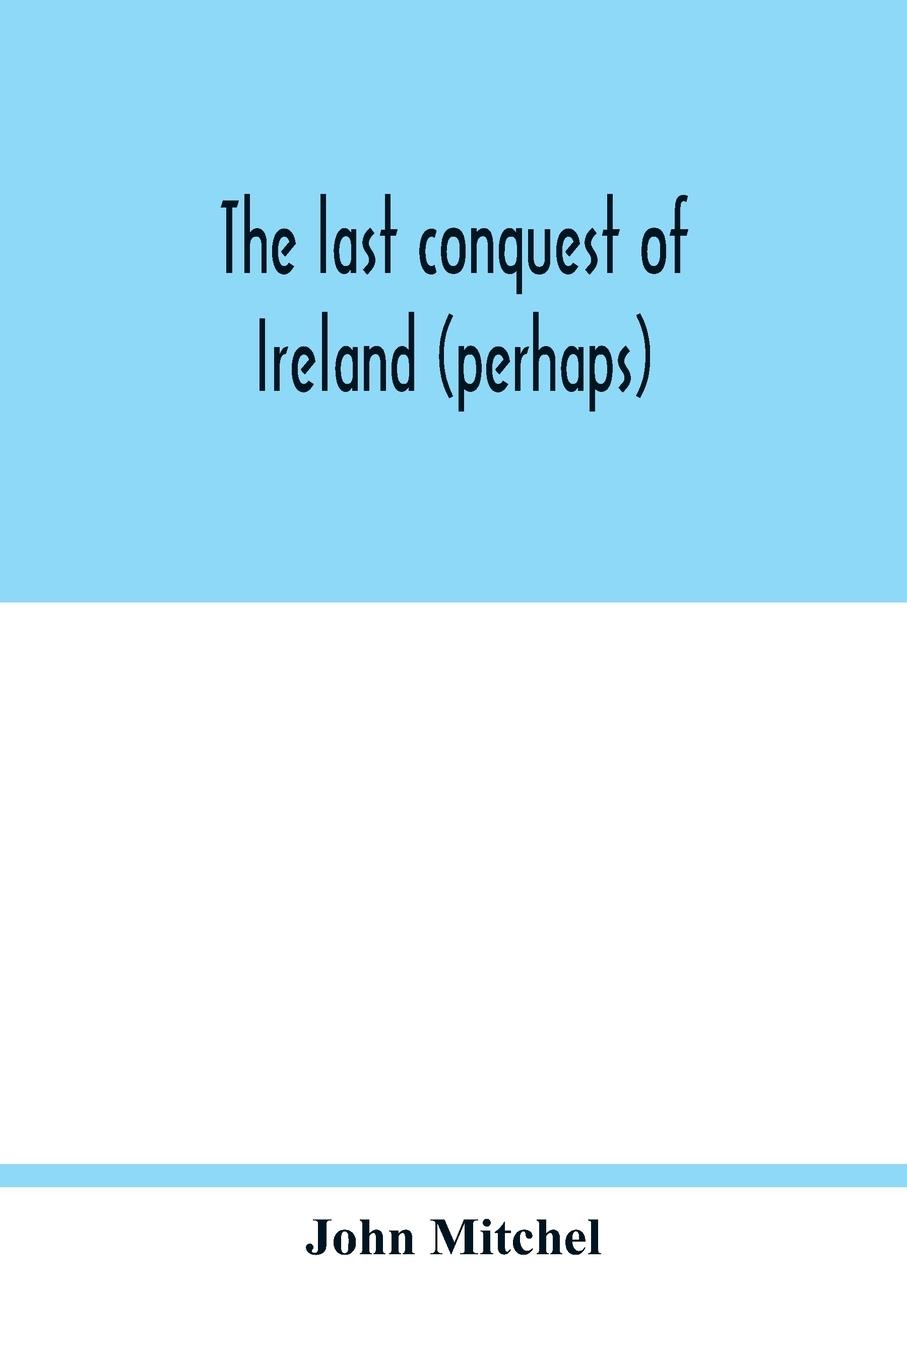 Carte last conquest of Ireland (perhaps) 